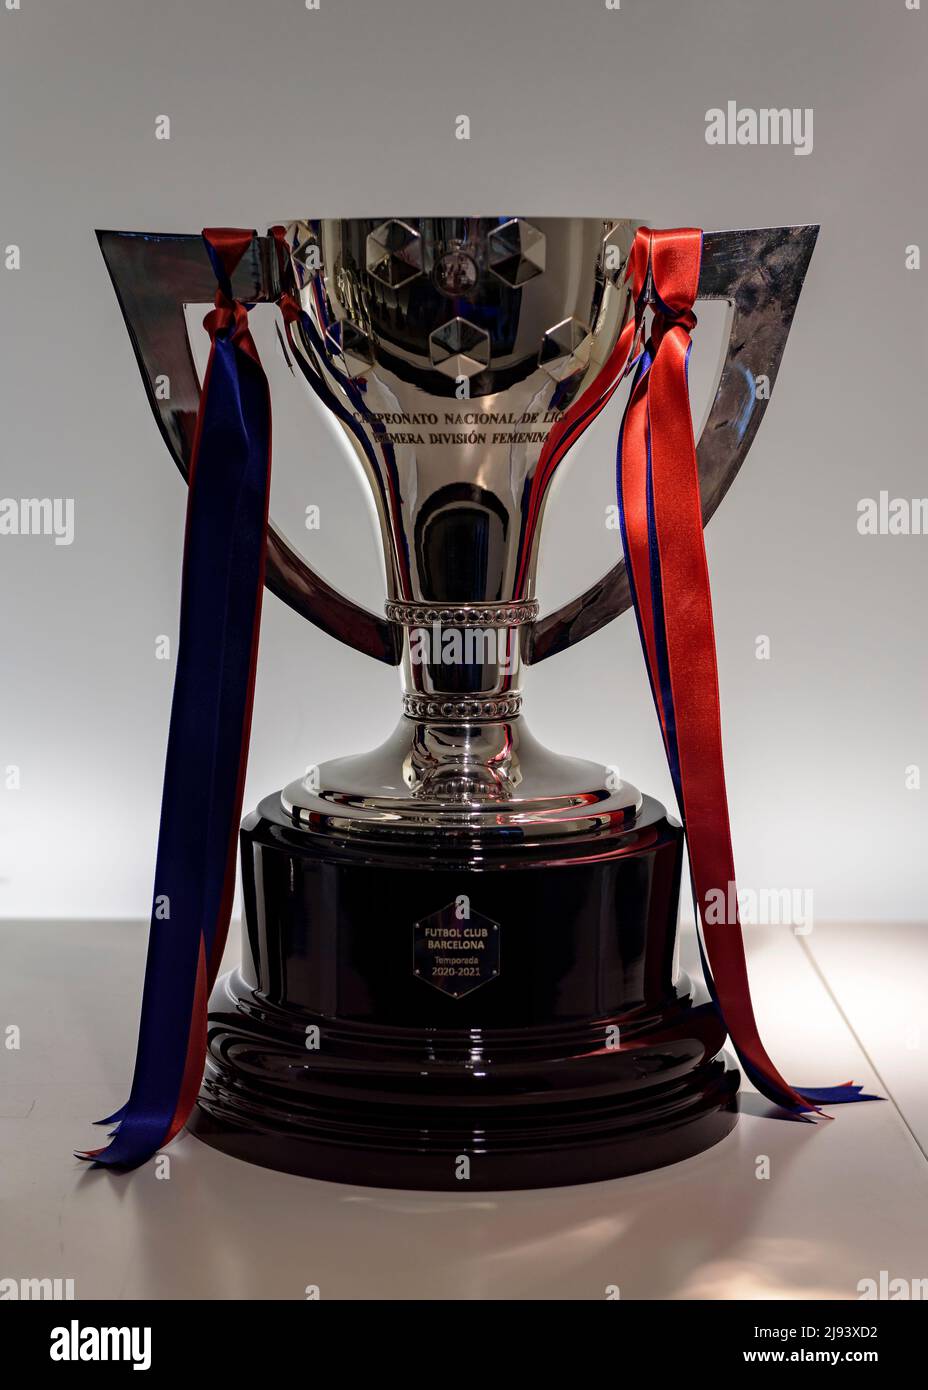 Copa de la liga española fotografías imágenes alta resolución - Alamy